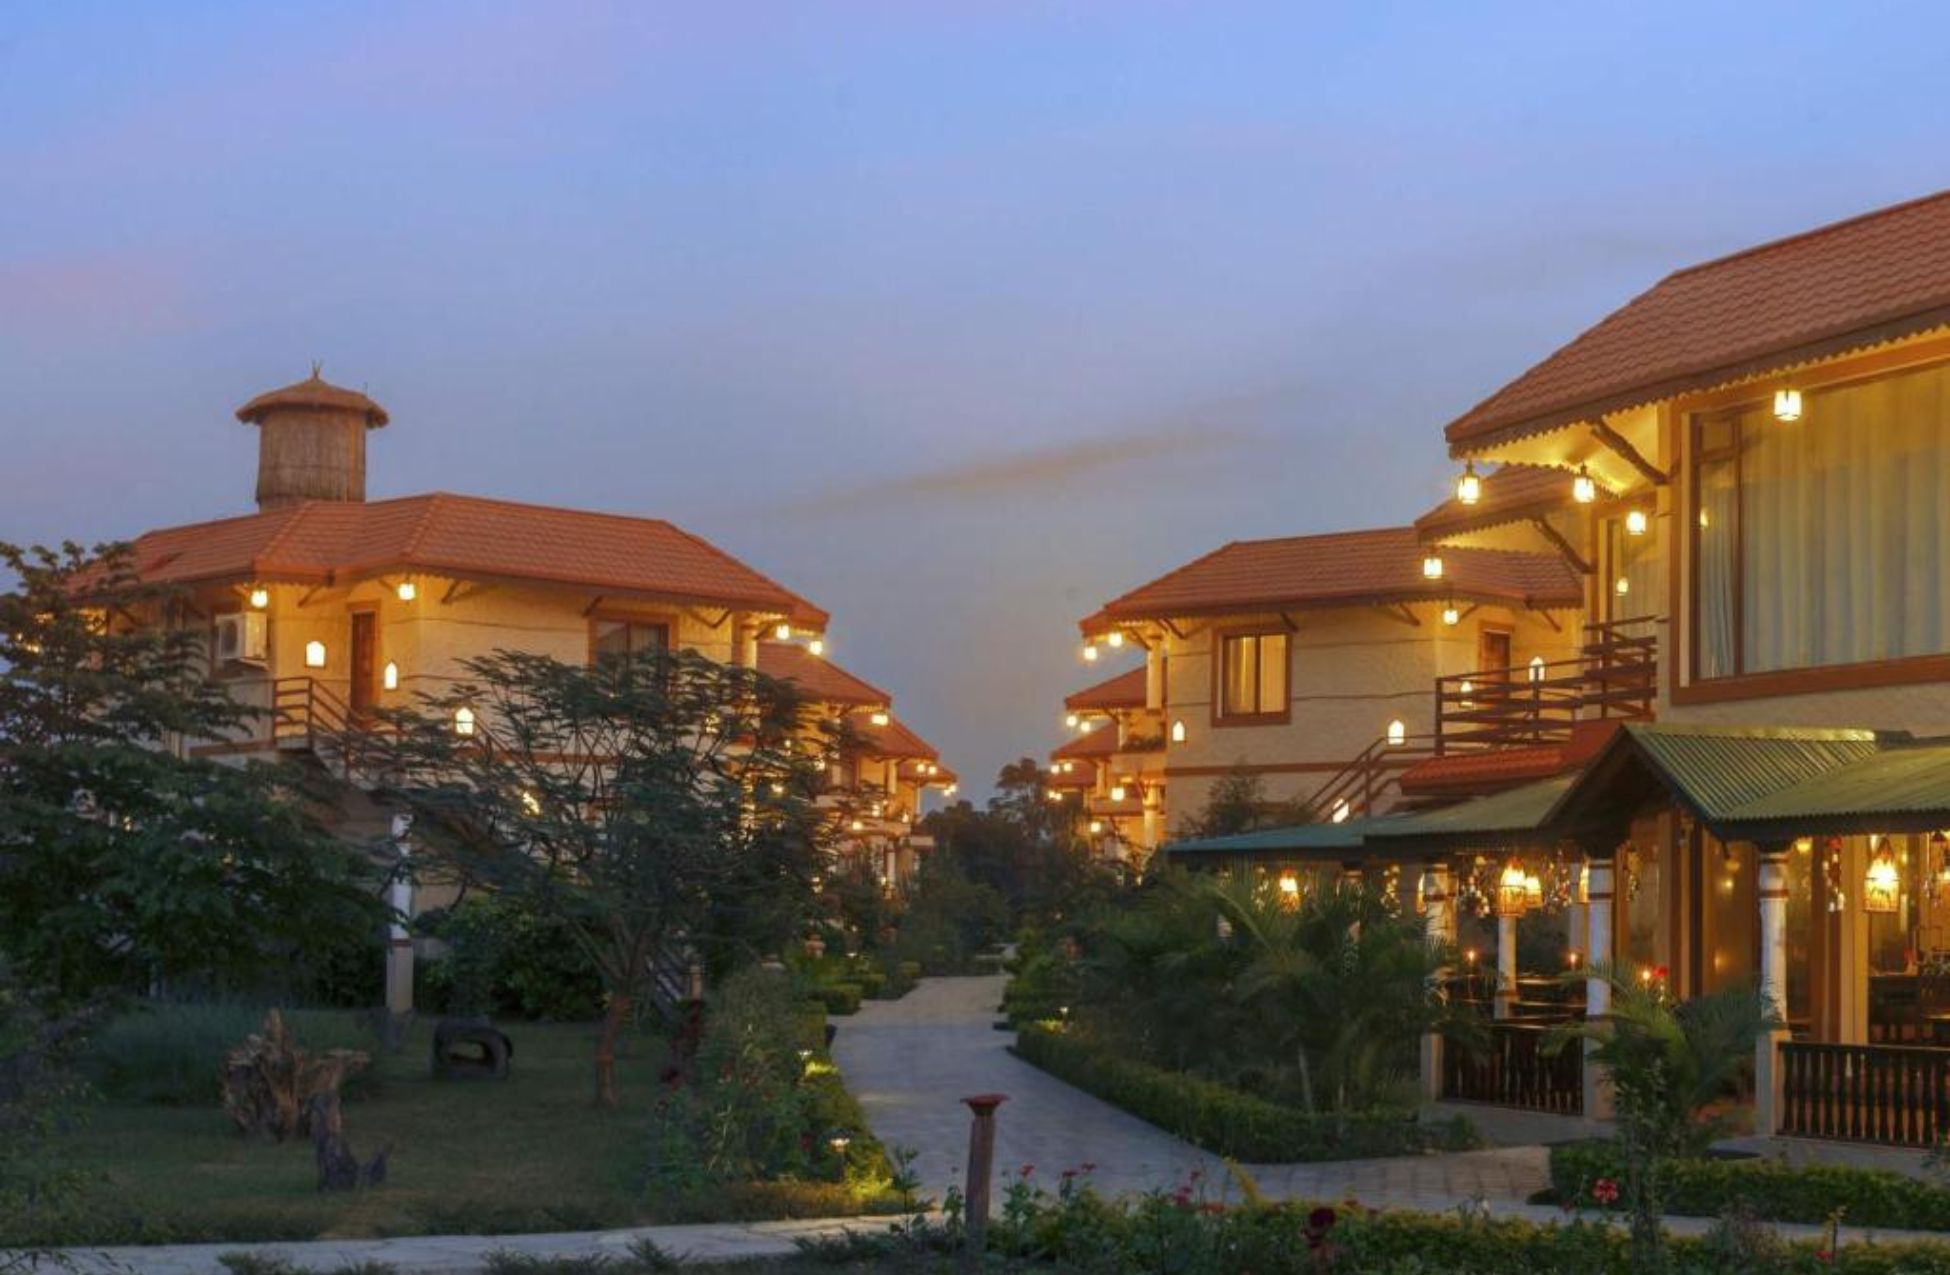 Green Park Chitwan - Best Hotels In Chitwan National Park Nepal